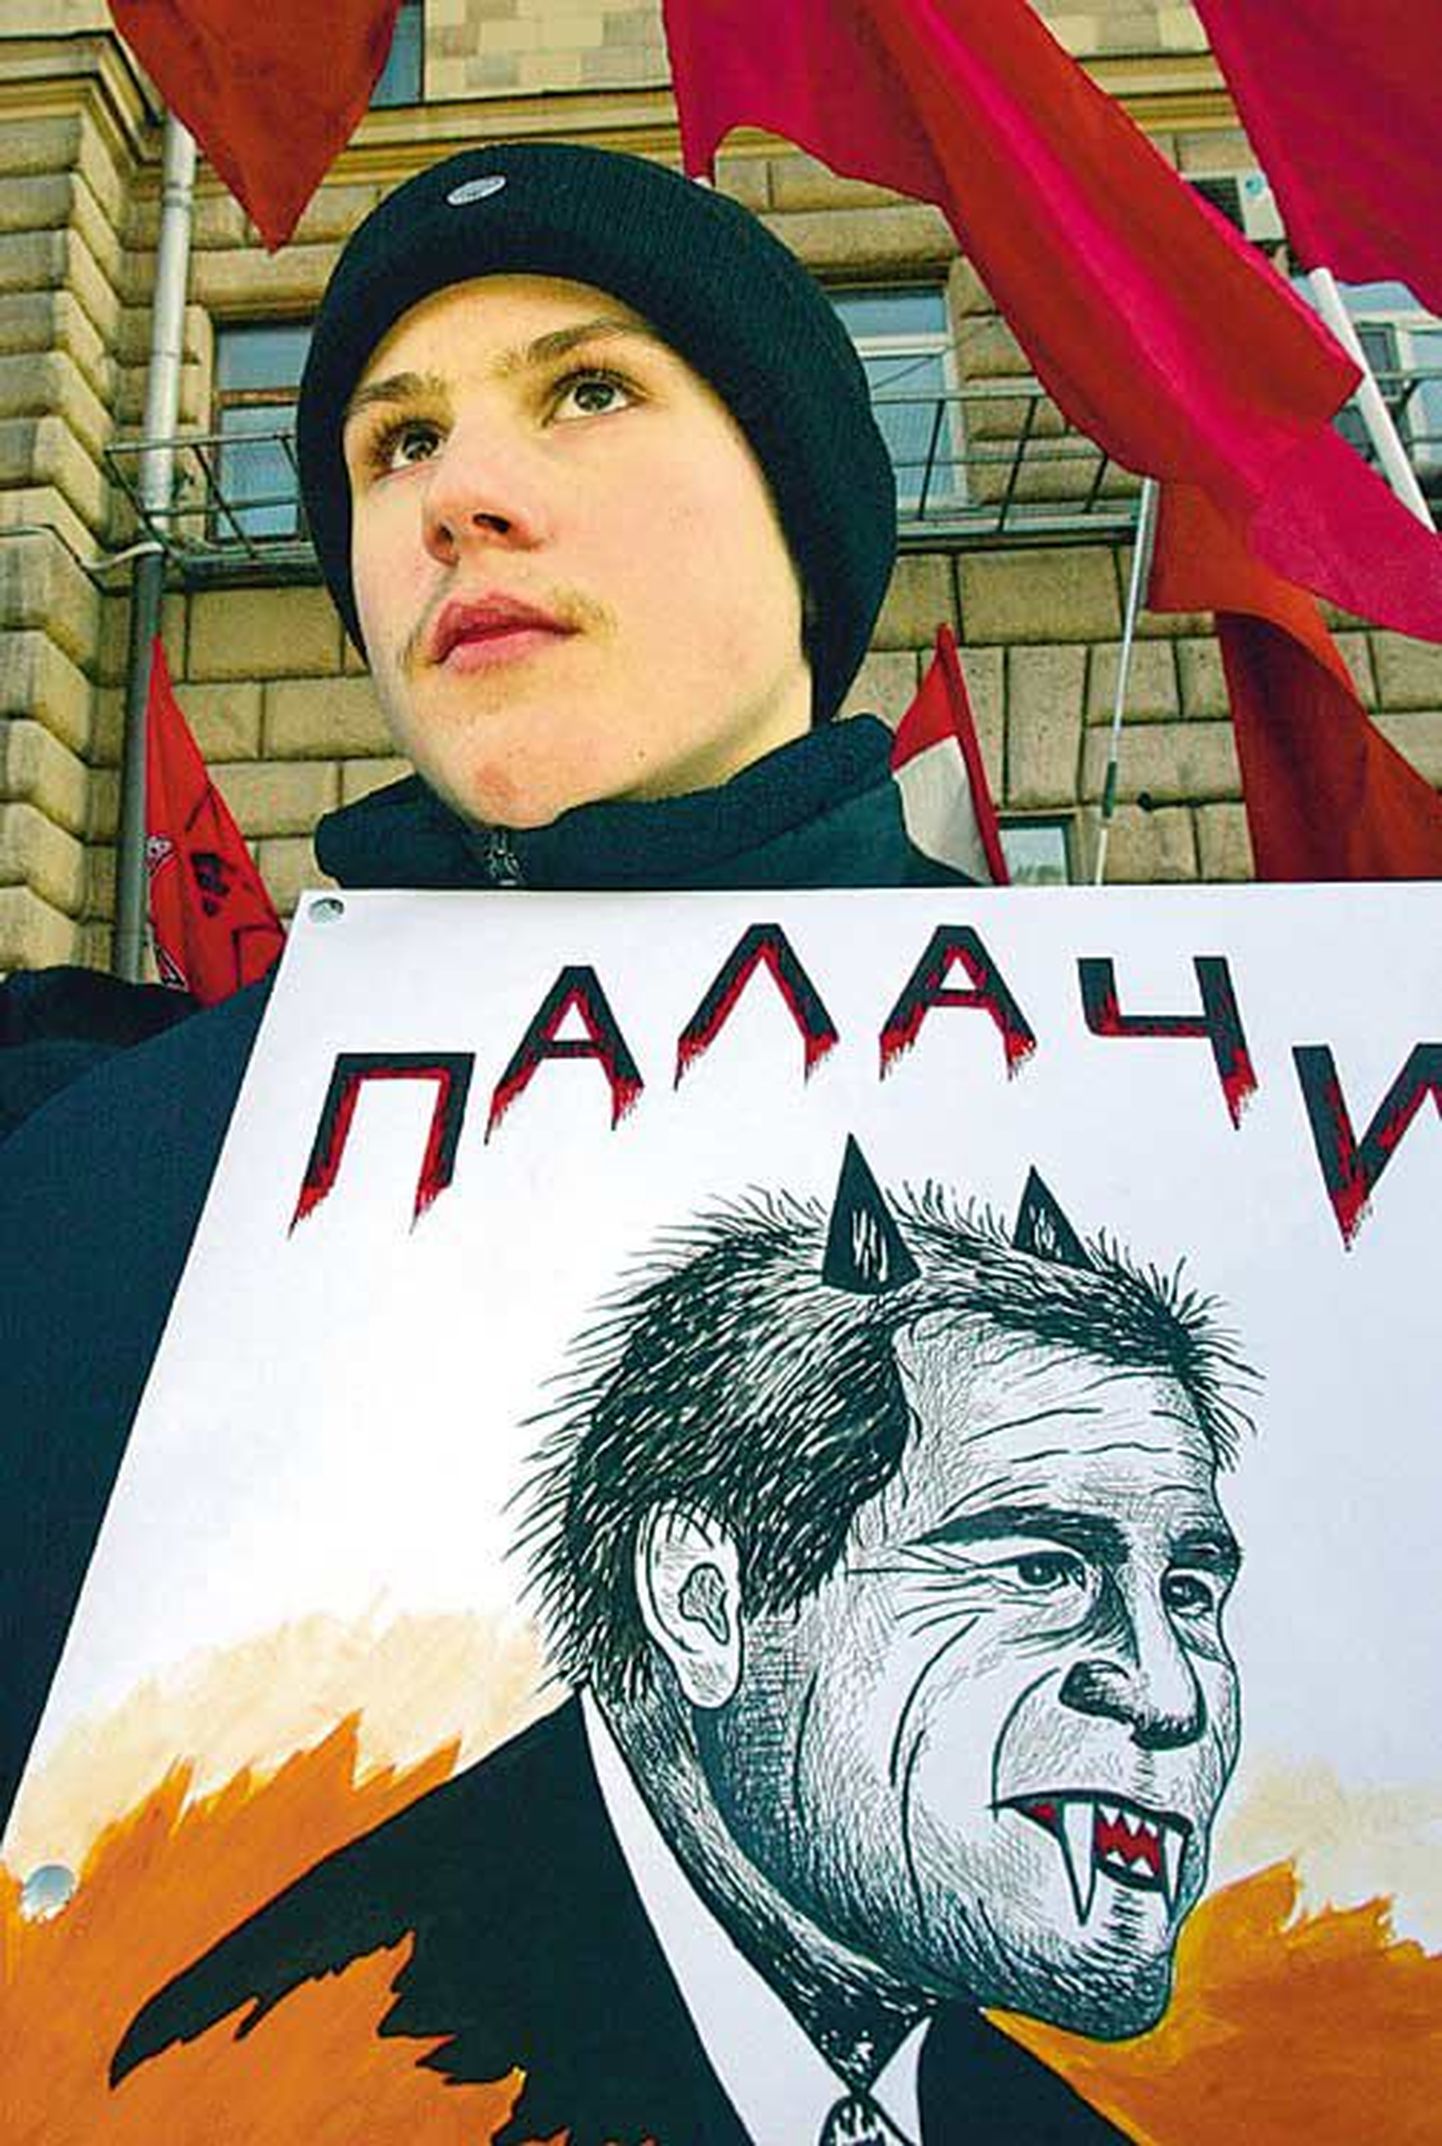 Vene nooruk protestib Iraagi sõja vastu plakatiga, millel USA presidenti George W. Bushi kujutatakse «timukas» saatanana. Ajal, mil Washington süüdistab Moskvat demokraatia hülgamises, heidab viimane Valgele Majale ette sekkumist teiste riikide sisepoliitikasse.